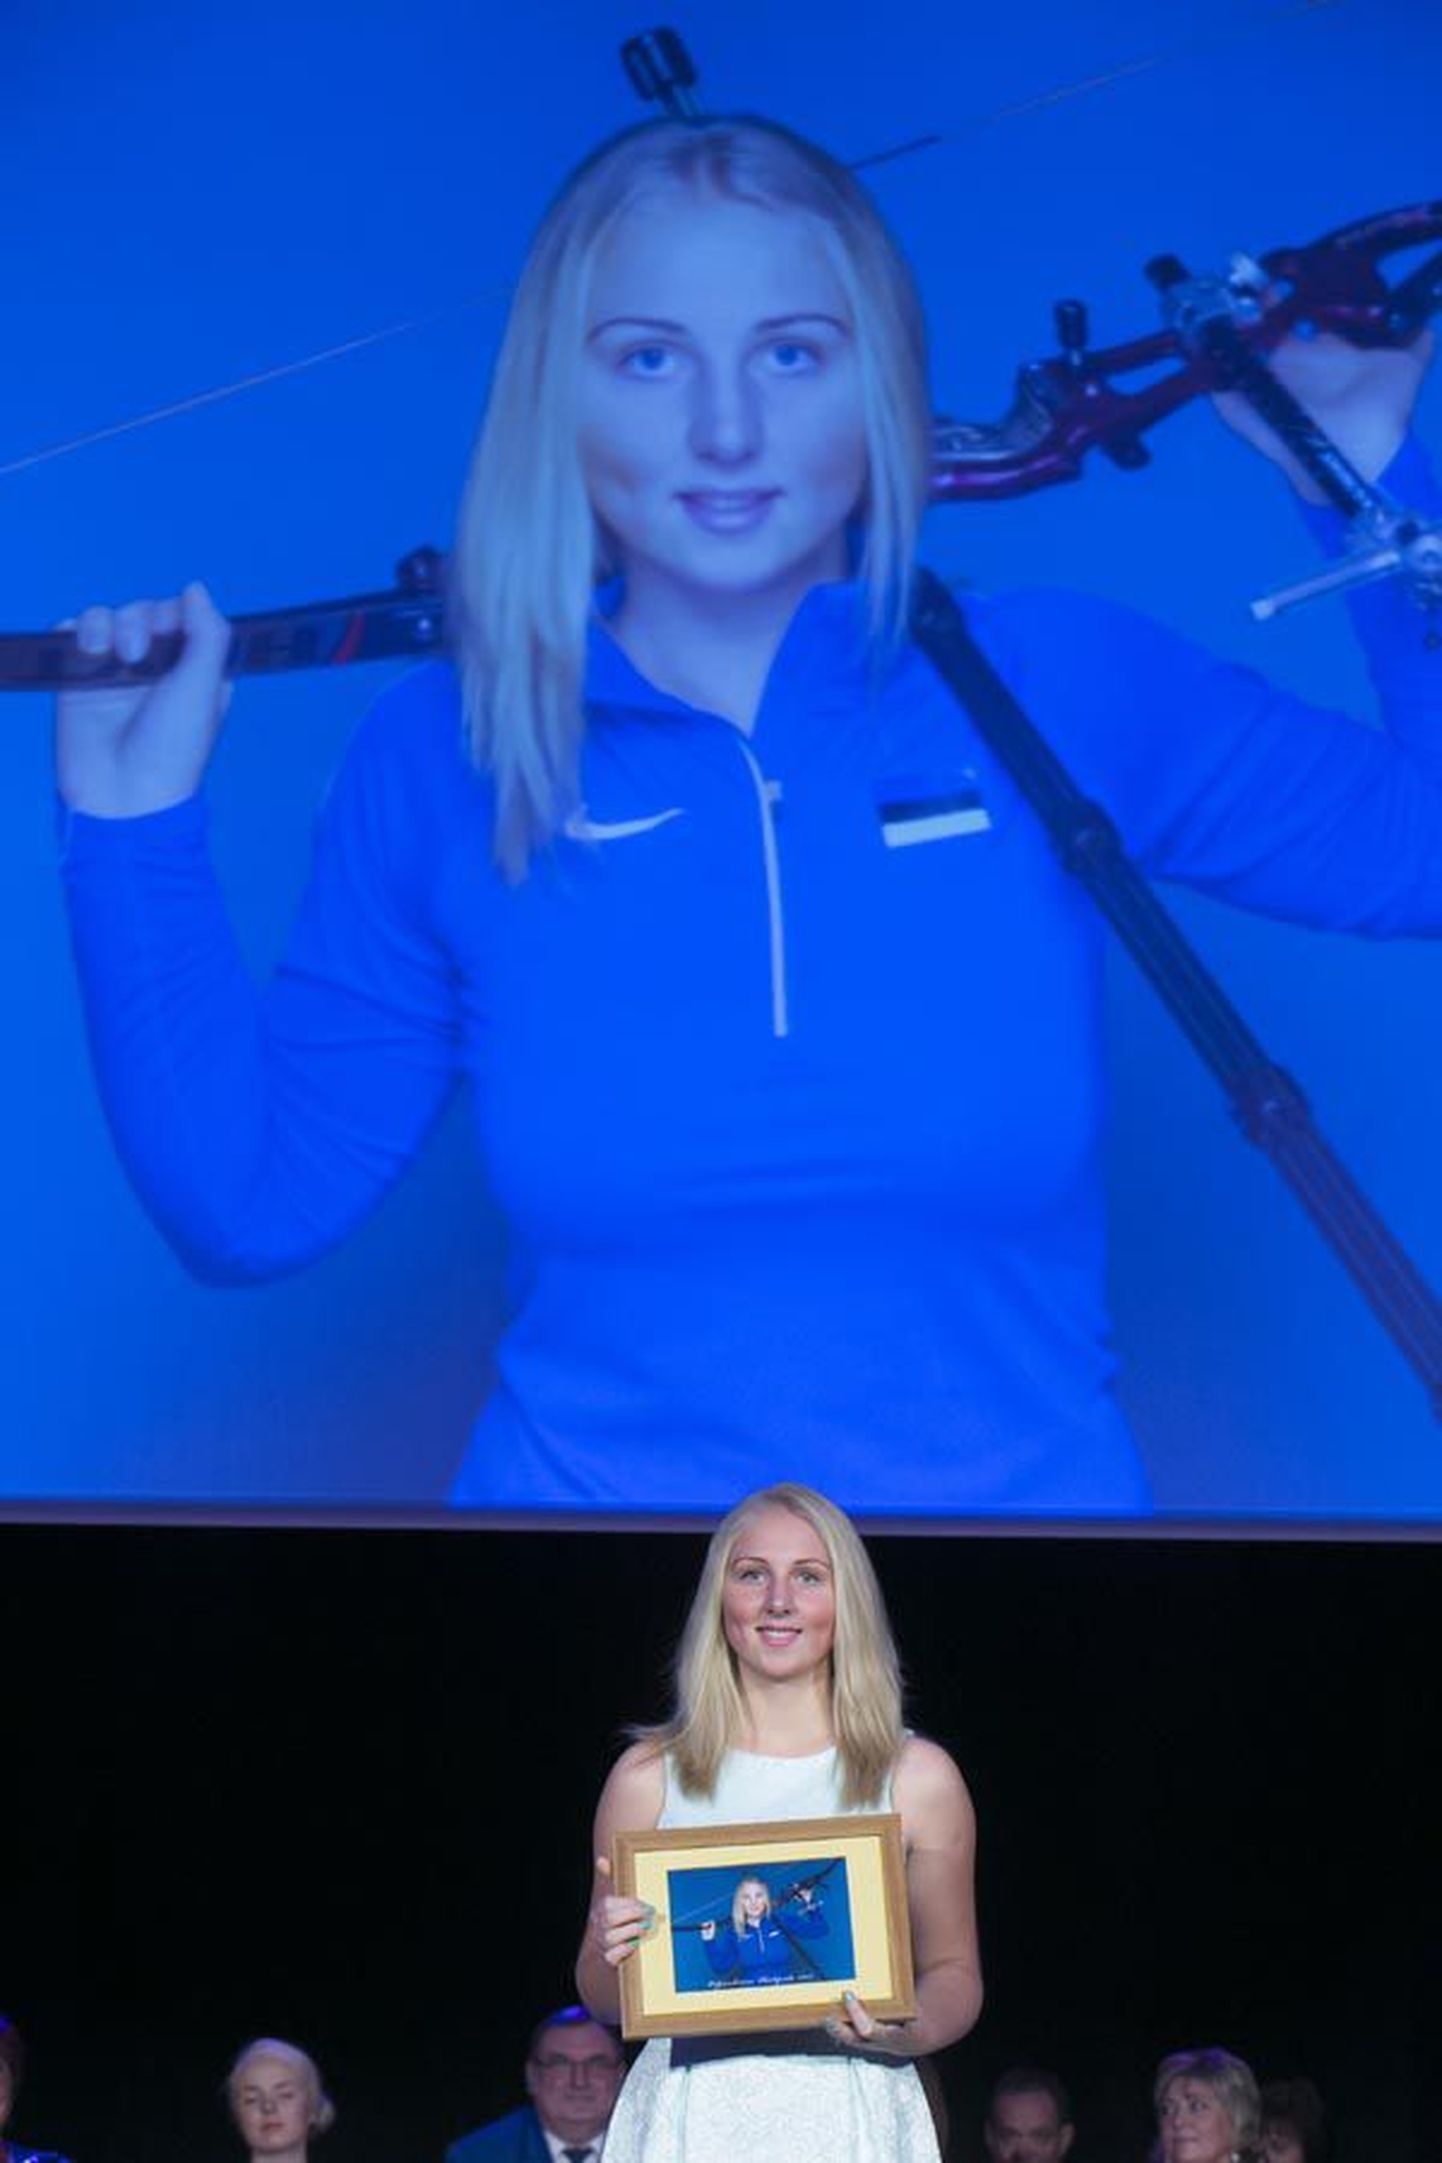 Eesti juunioride vibulaskmise meister Laura Nurmsalu sõidab veebruari lõpul Prantsusmaale sisemaailmameistrivõistlustele. Pilt on tehtud jaanuaris Sakala keskuses peetud «Pärlipeol».